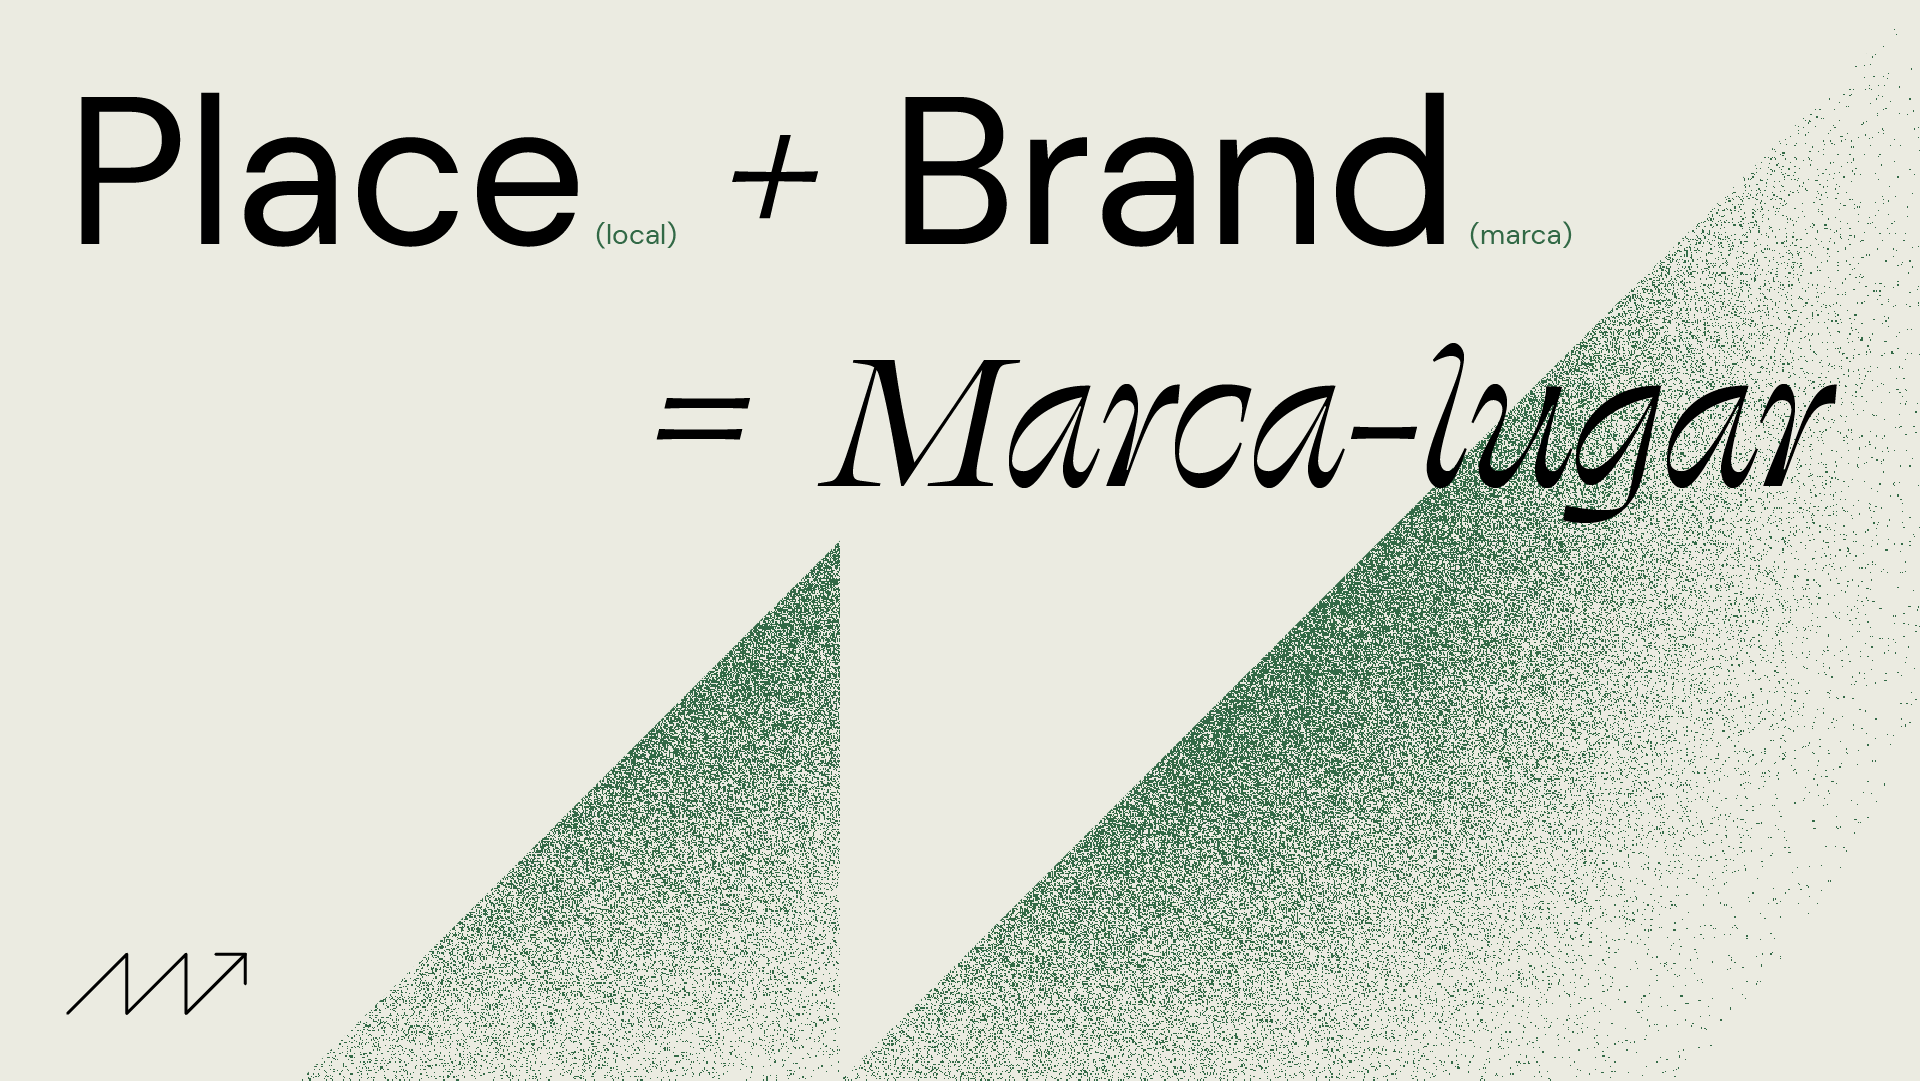 Imagem gráfica que explica o conceito de marca-lugar como place (local) + brand (marca), resultando em place branding.